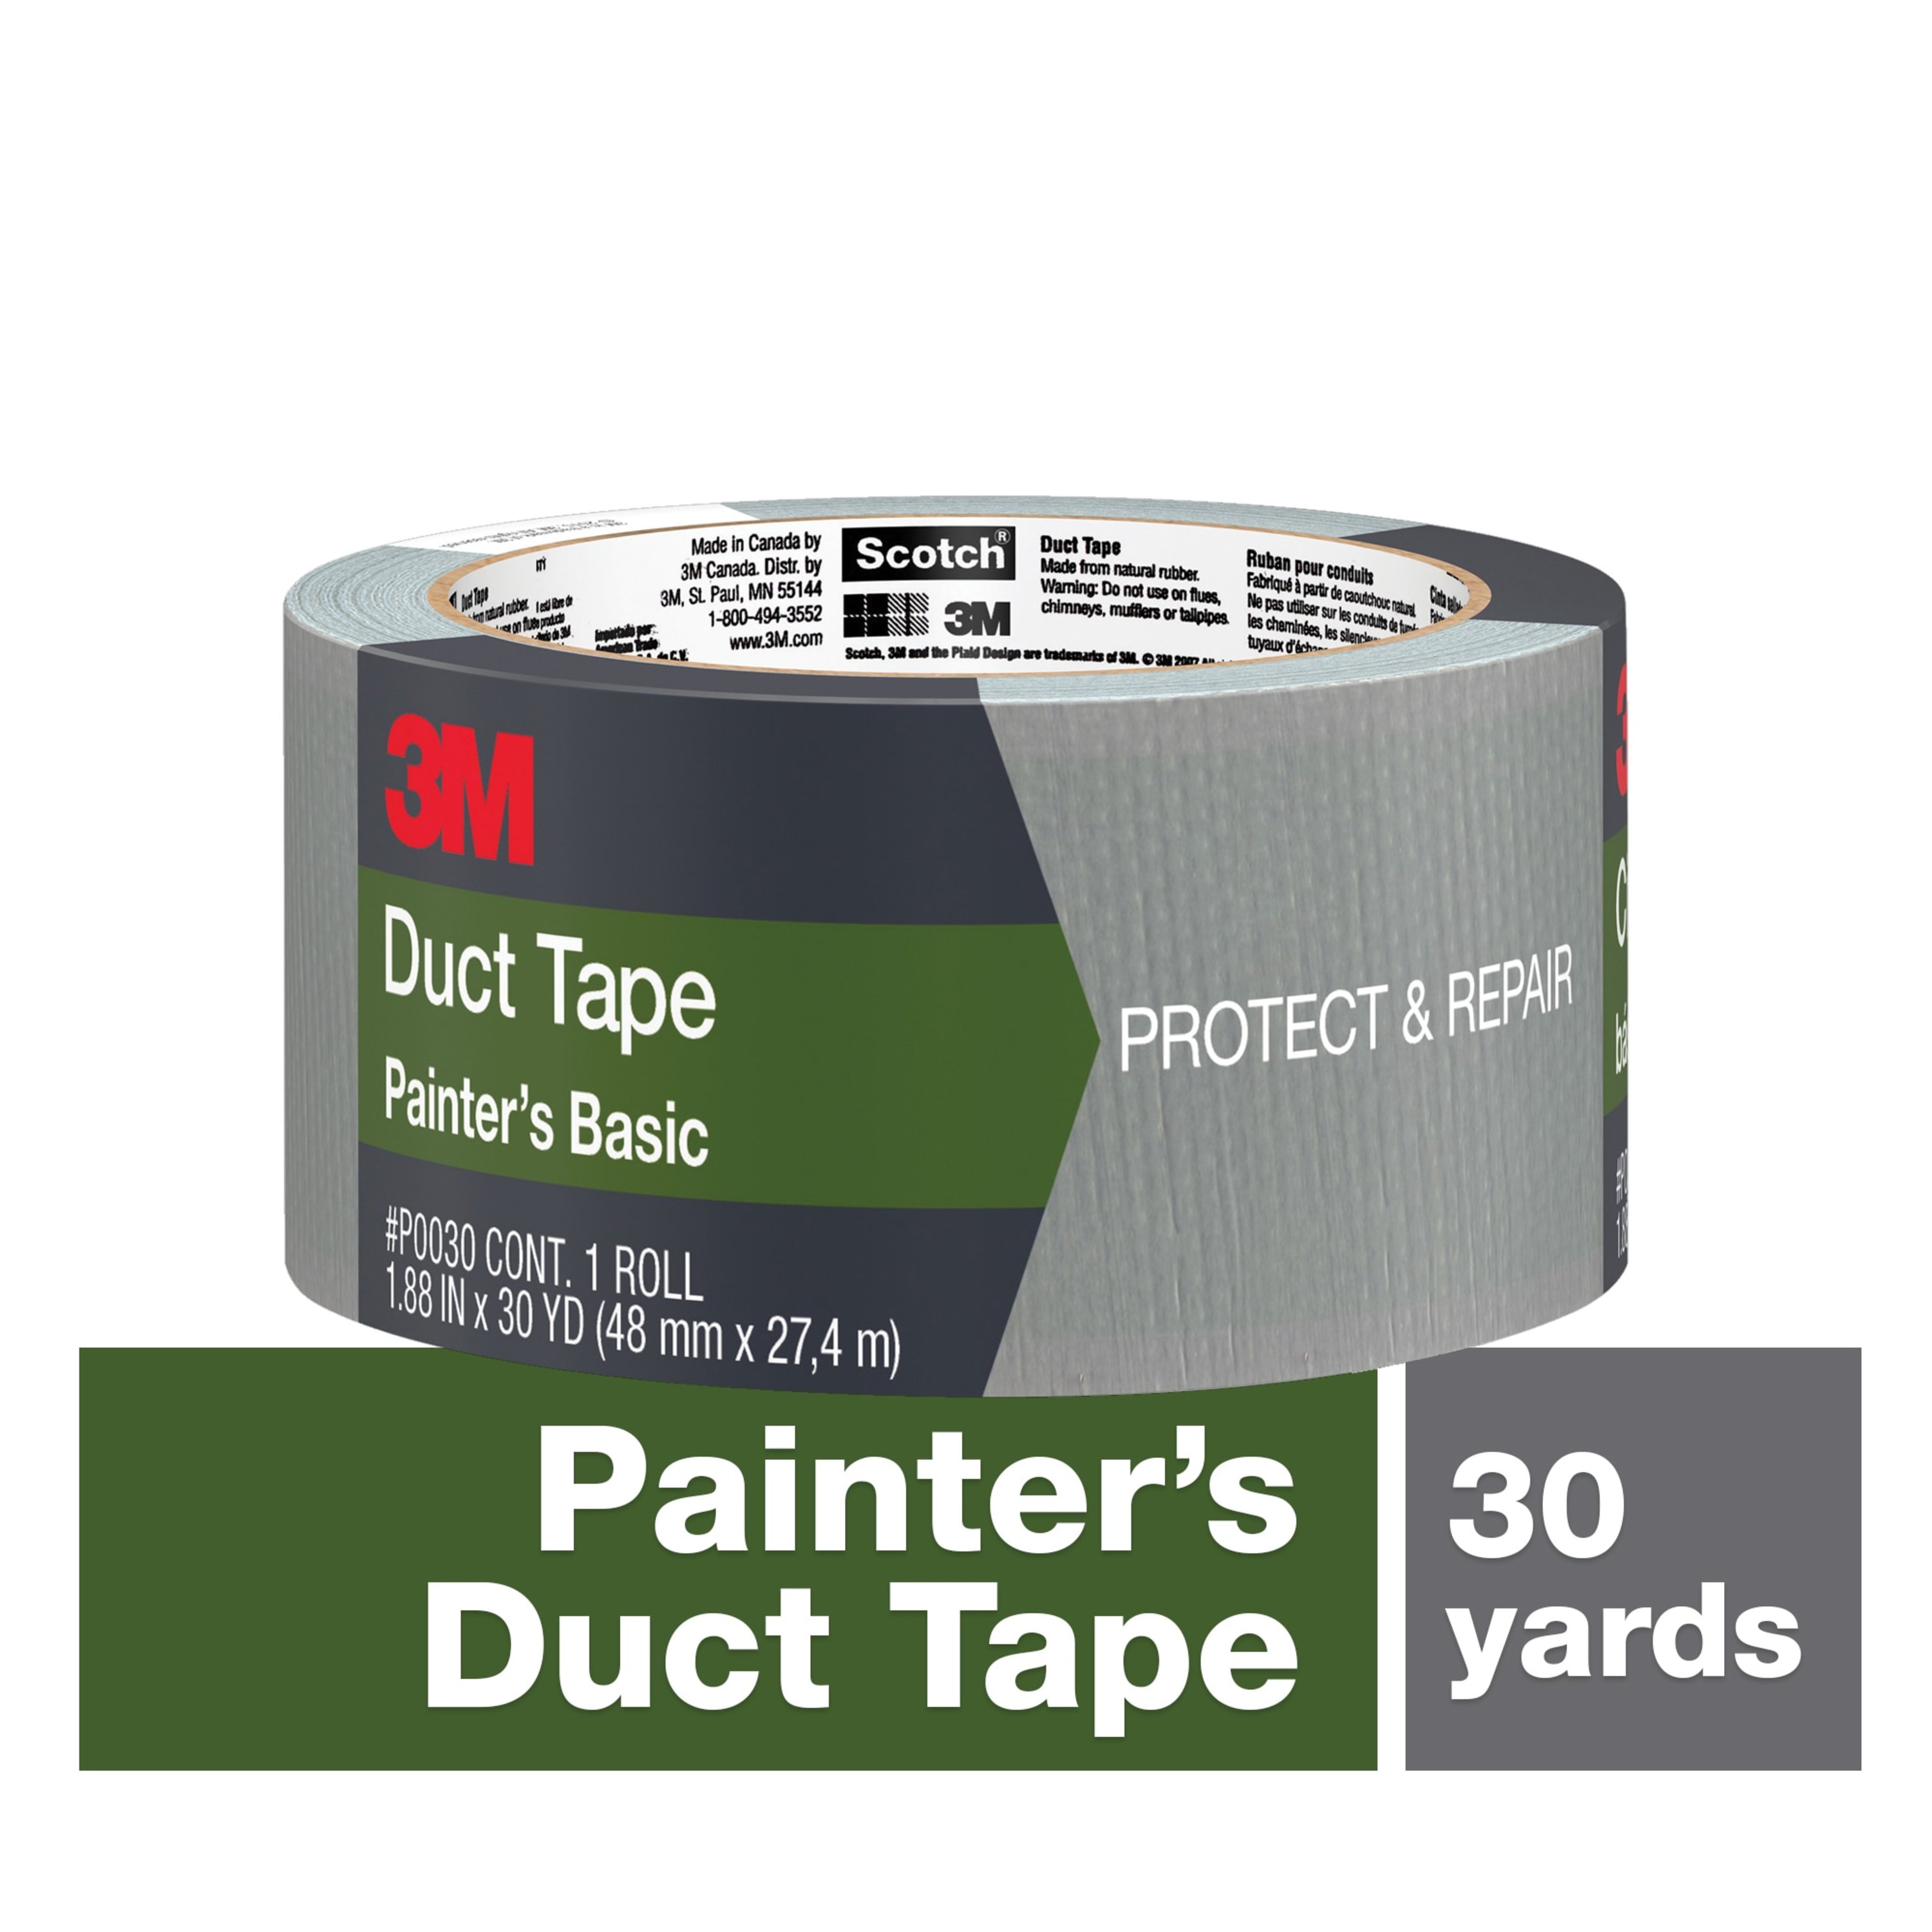 3M™ Basic Painter's Duct Tape P0030, 1.88 in x 30 yd (48 mm x 27.4 m), 16 rolls/case